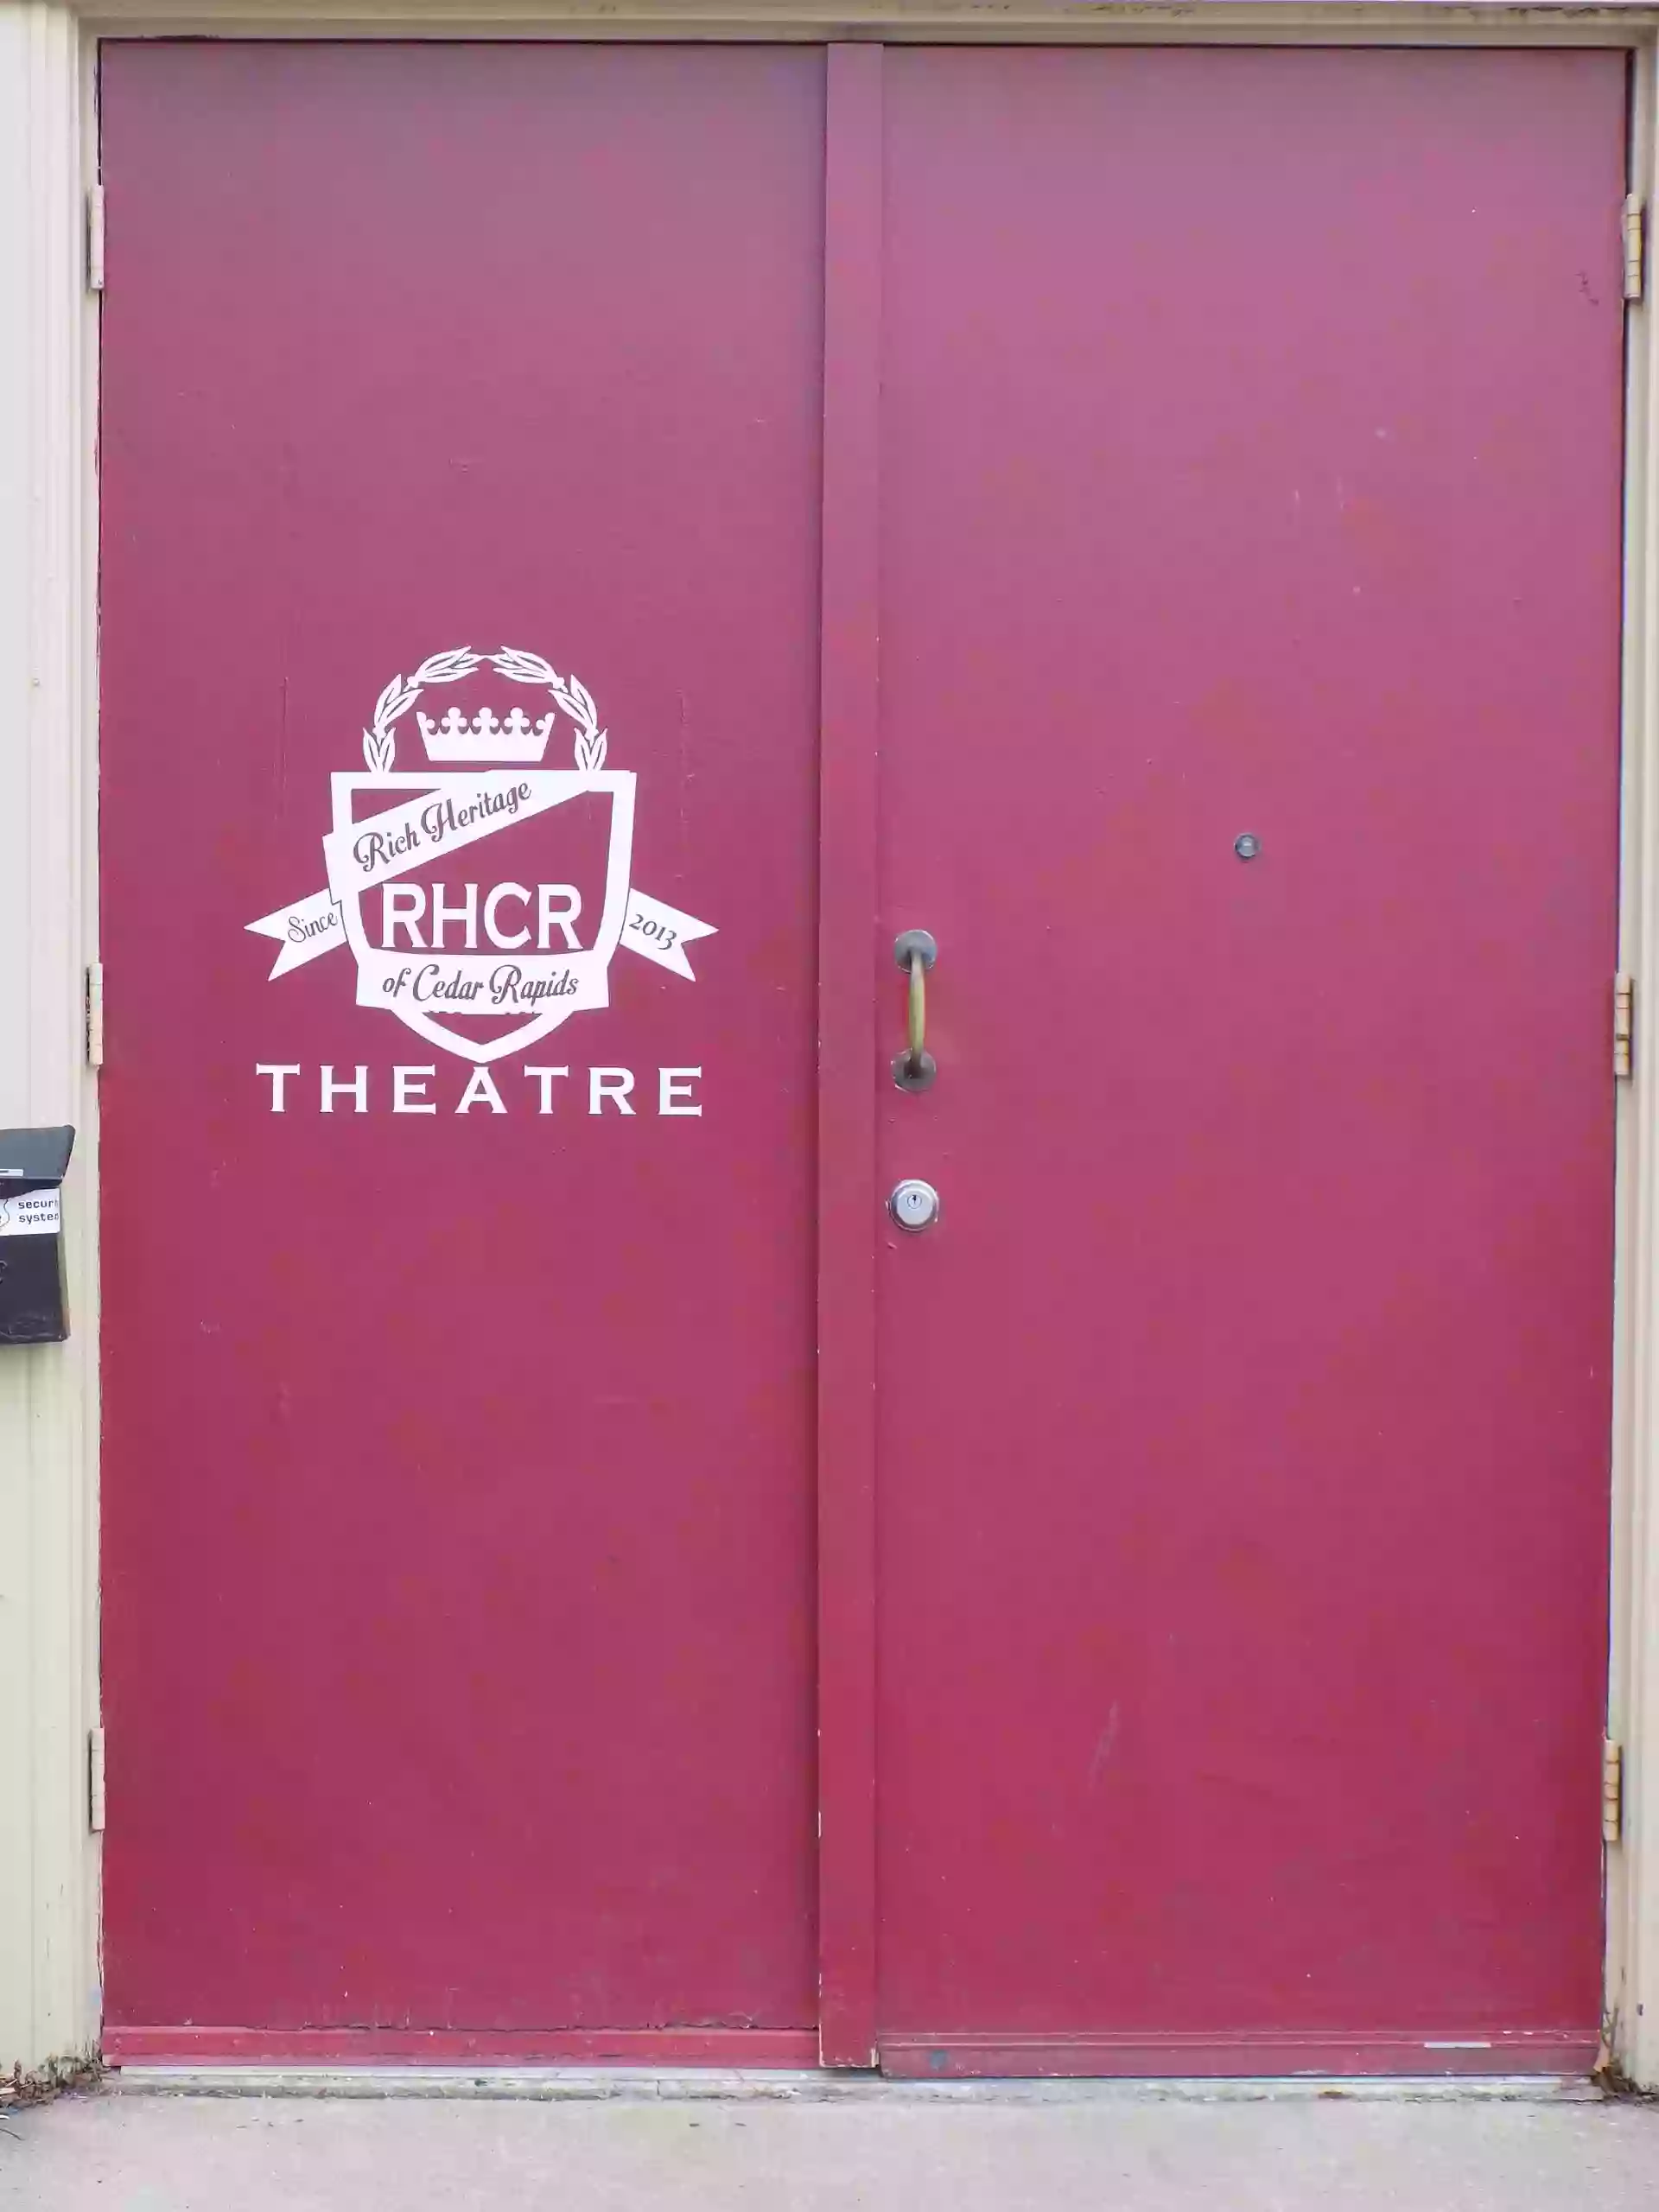 RHCR Theatre Company